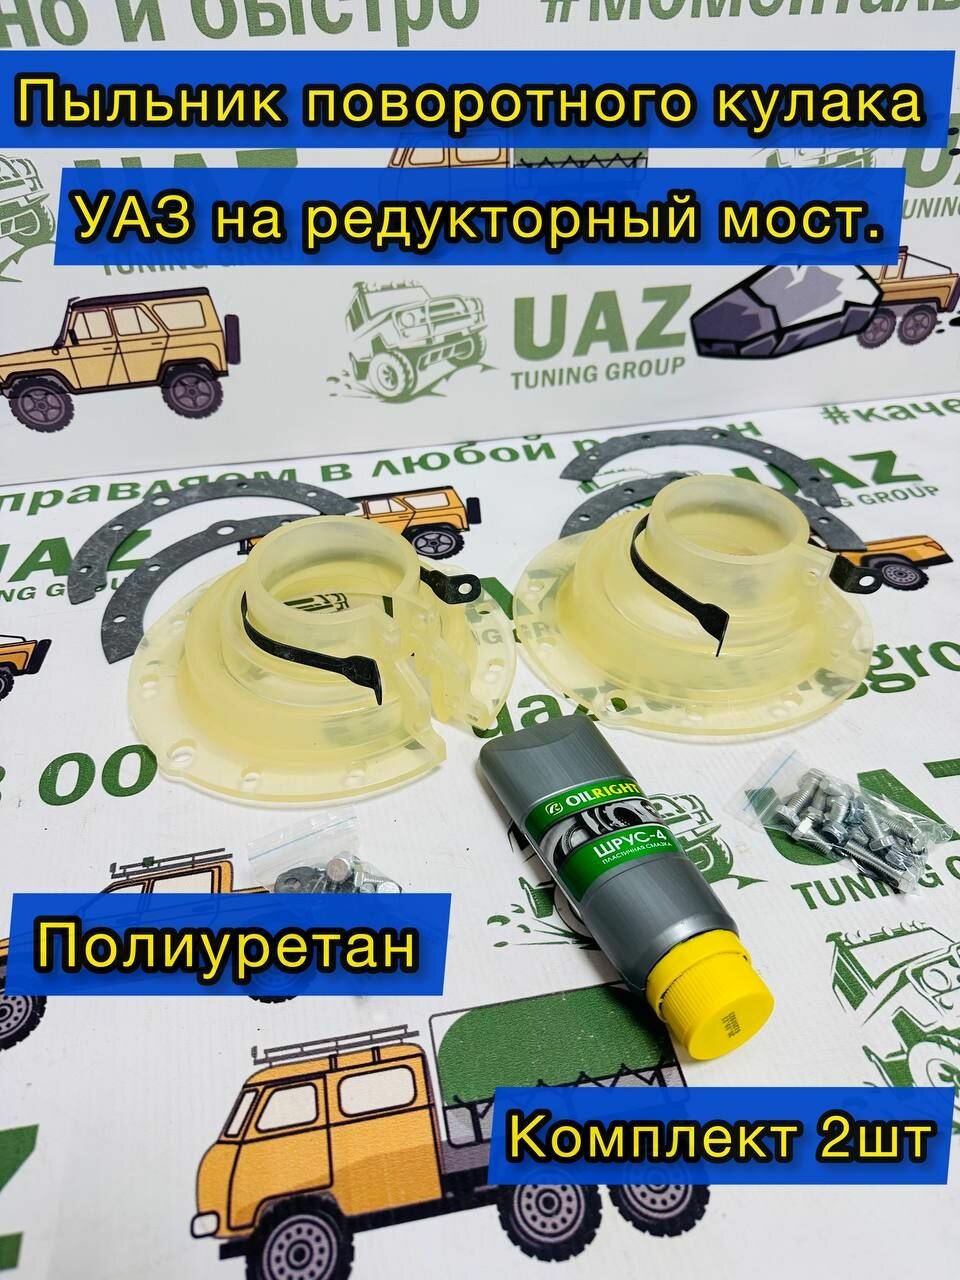 Пыльники поворотного кулака УАЗ редукт. мост (полиуретан) к-т 2 шт. прозрачные